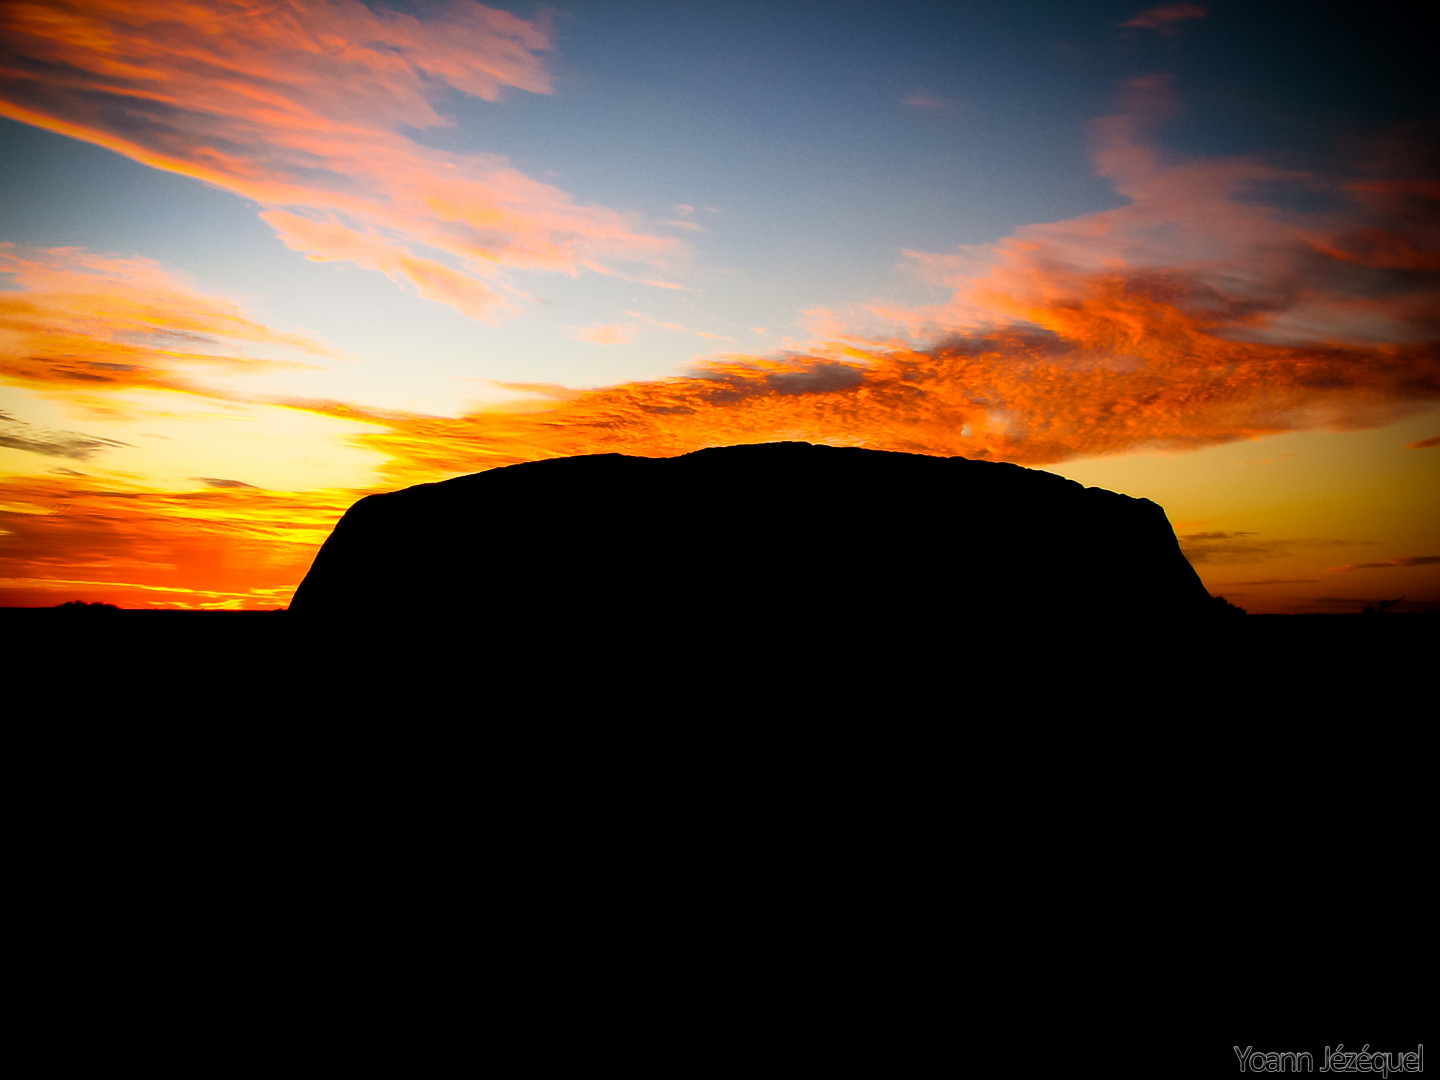 Ayers rock / Uluru